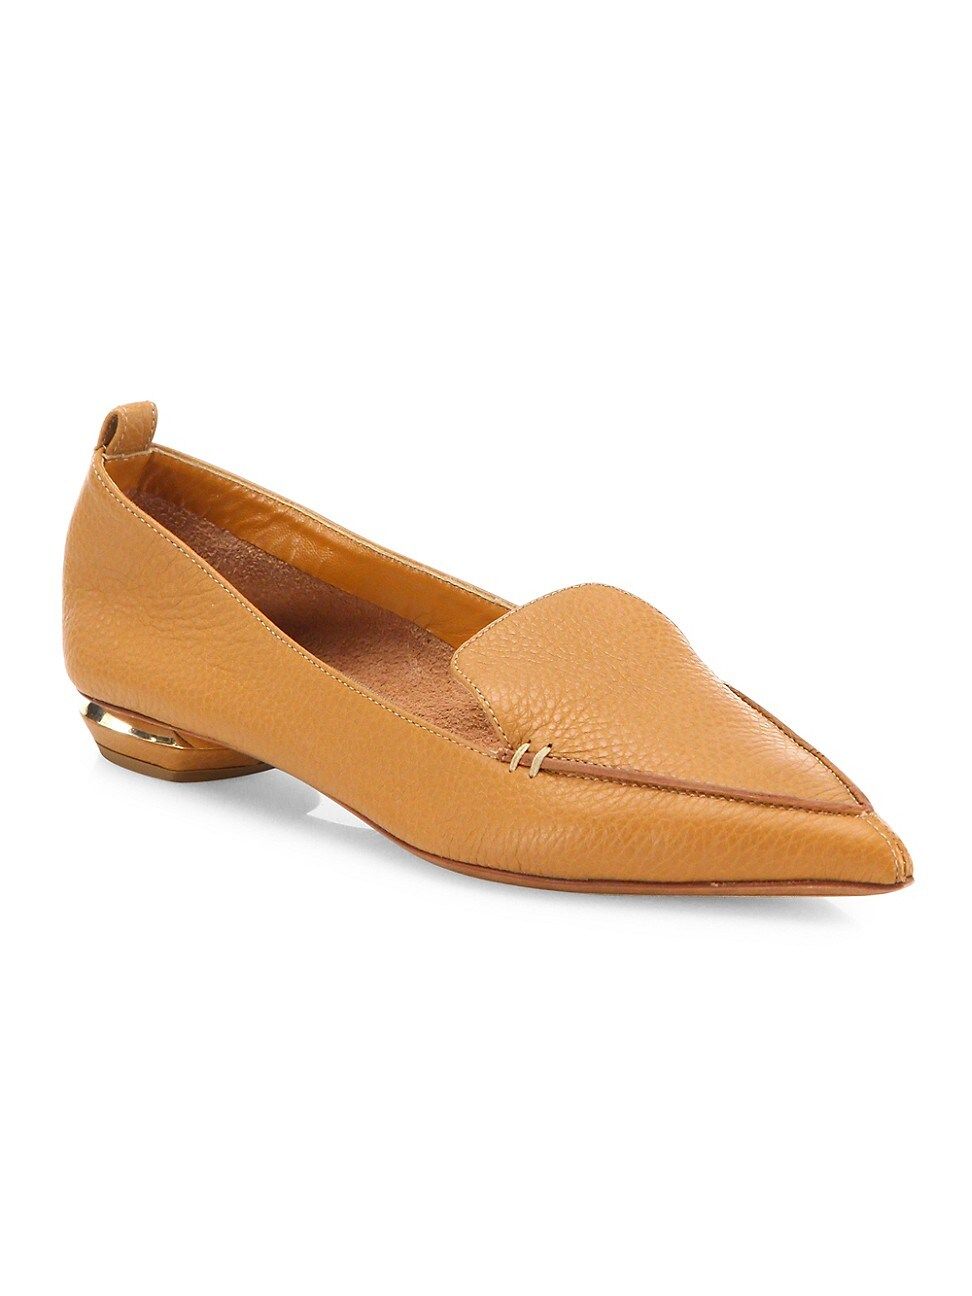 Nicholas Kirkwood Women's Beya Leather Loafers - Tan - Size 4.5 | Saks Fifth Avenue